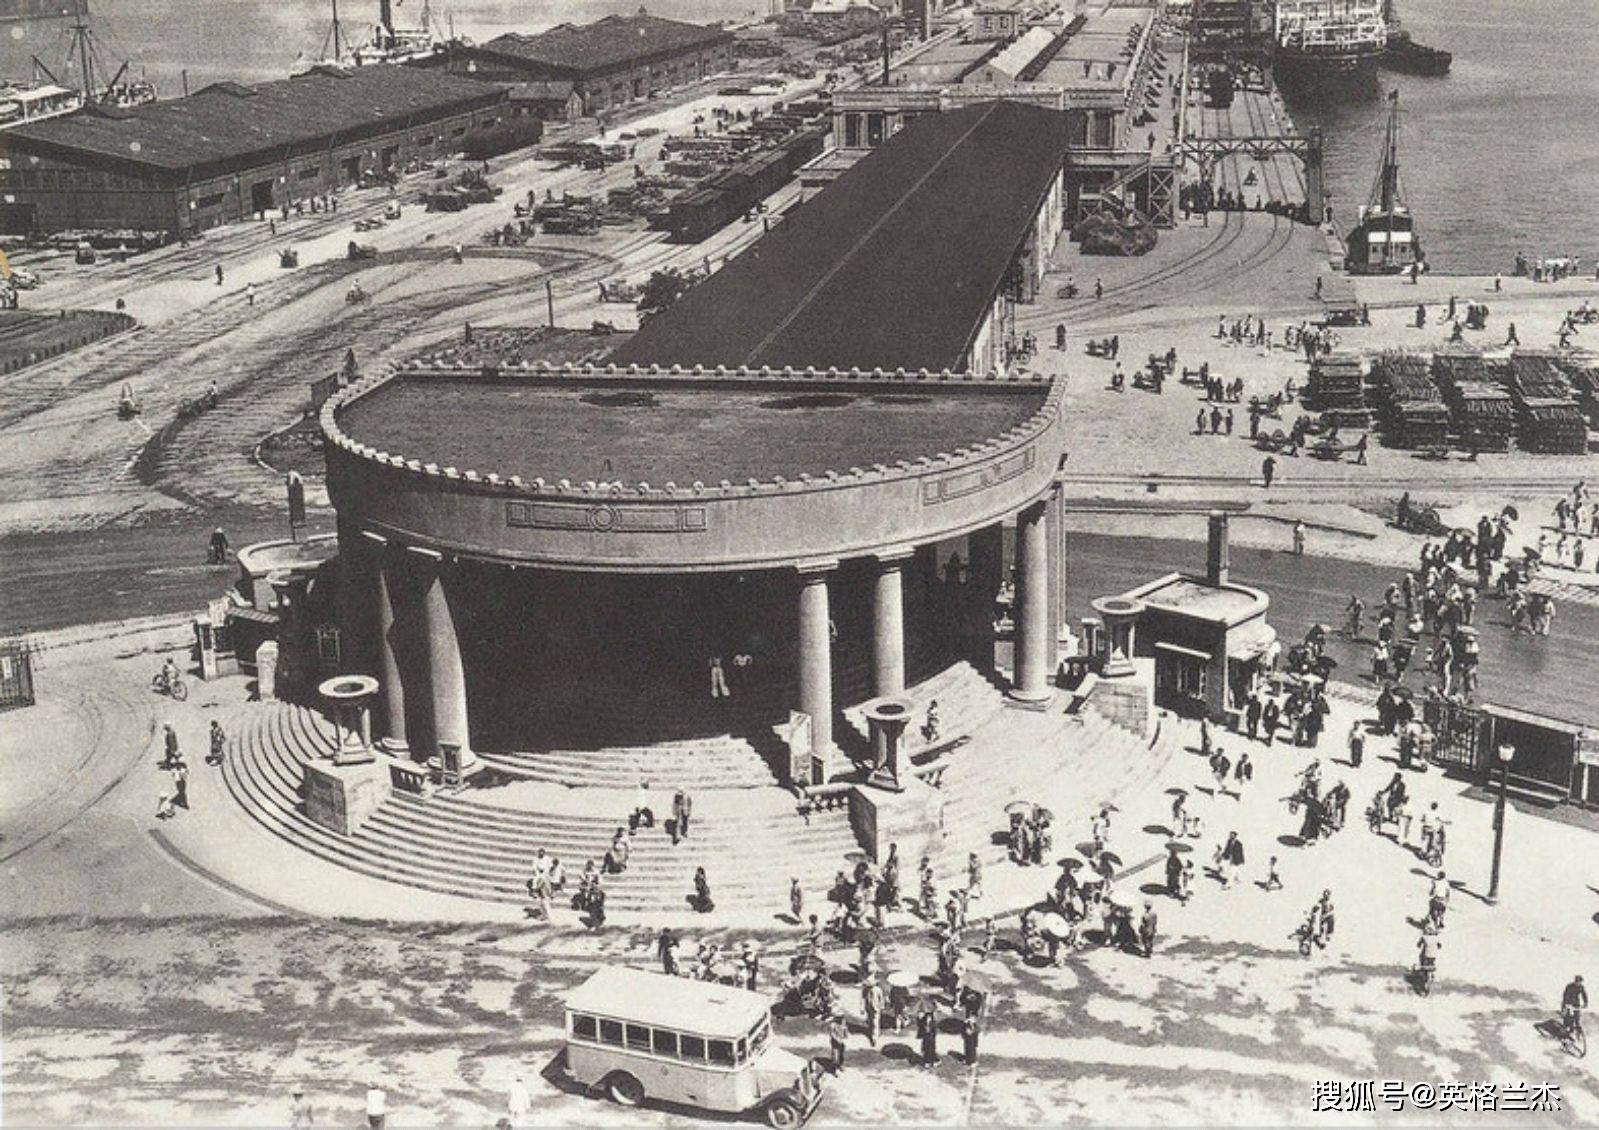 原创大连老照片:1927年的火车站,胜利桥,东关街,看下有什么不同?